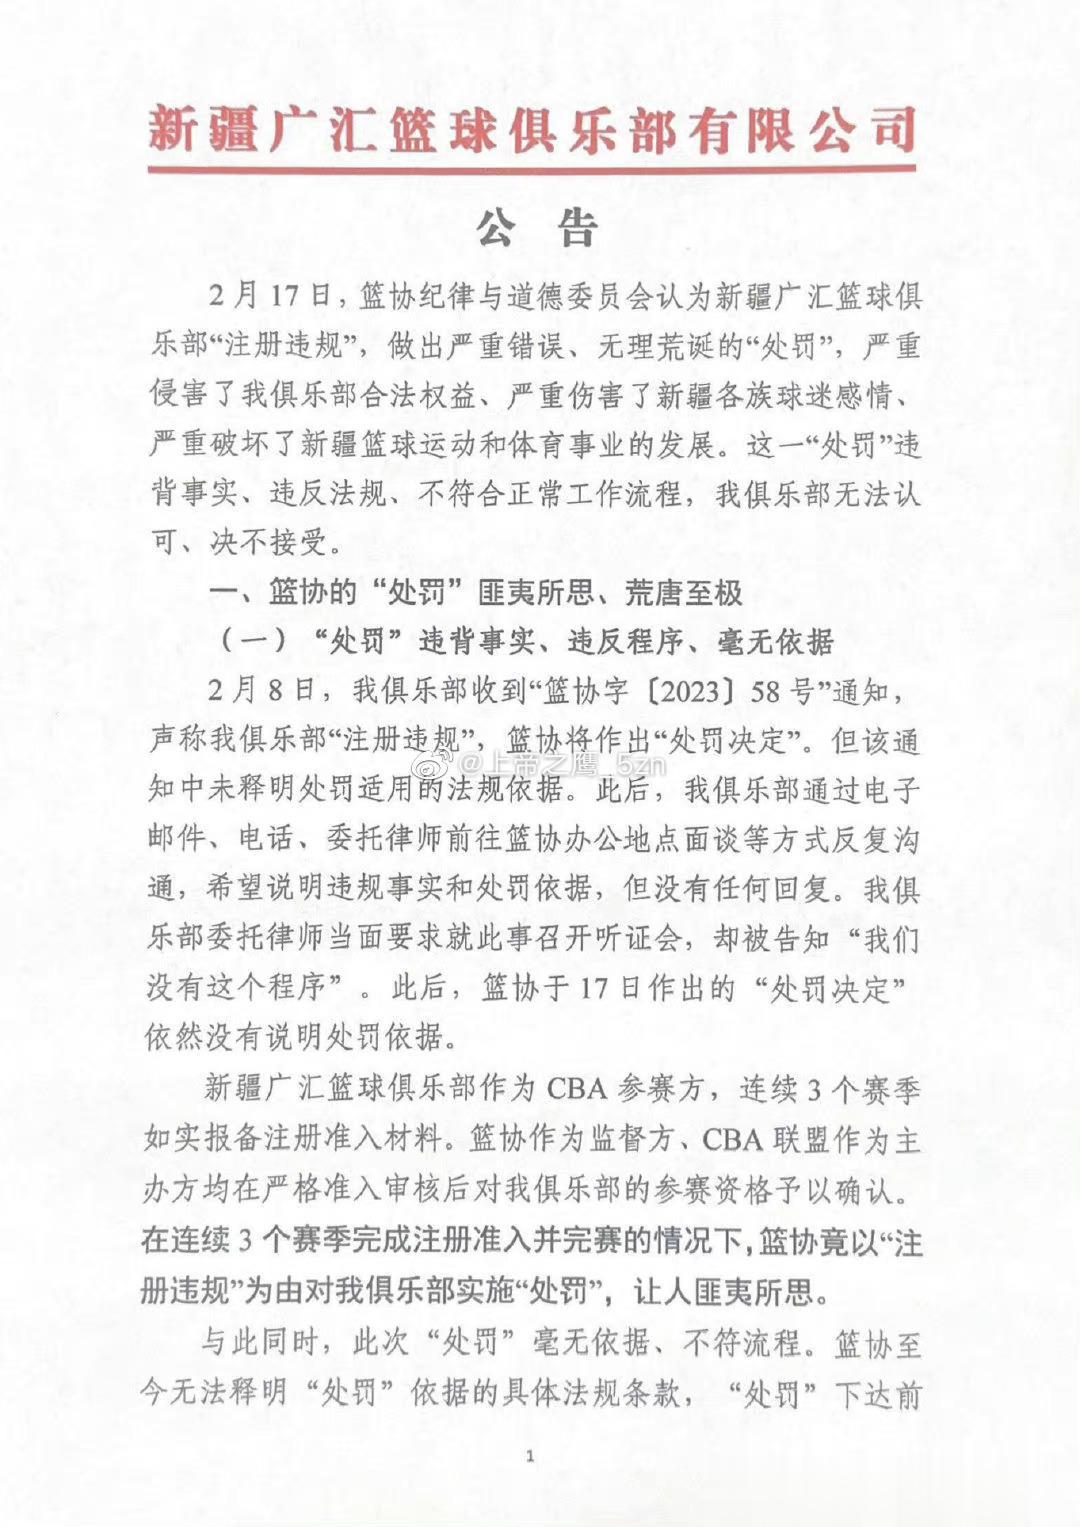  新疆广汇俱乐部深夜发表声明，怒喷篮协的处罚“严重错误、无理荒诞”，并宣布退出C(1)